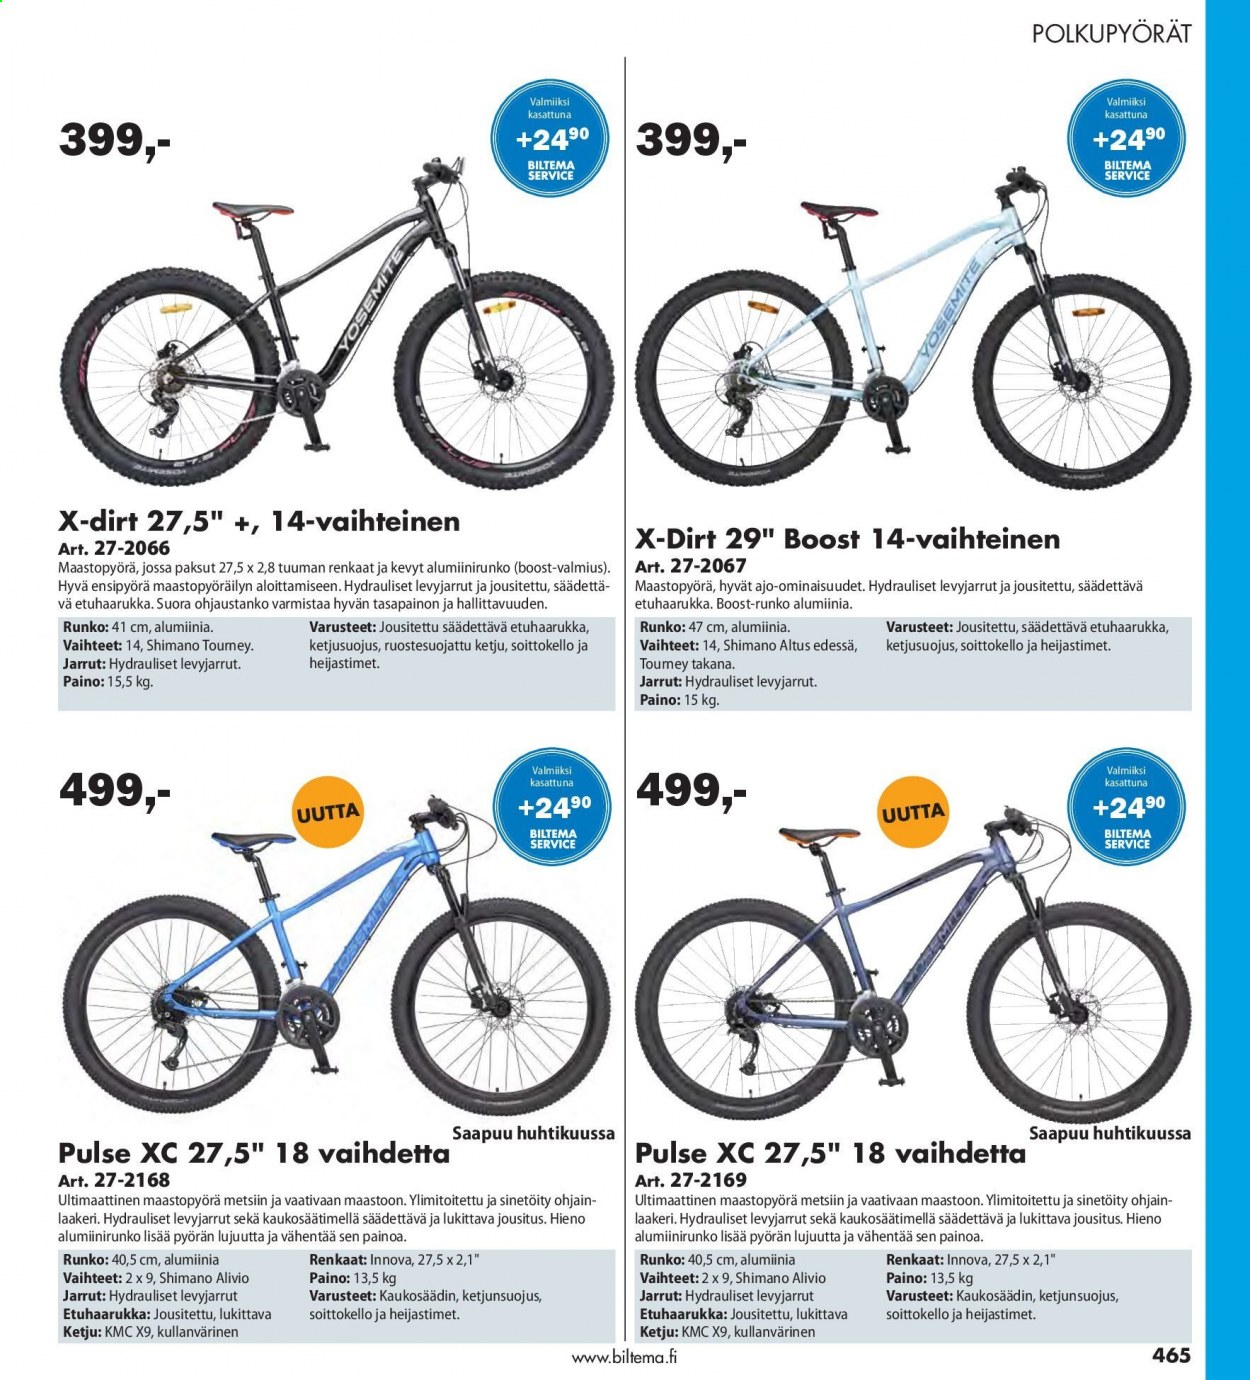 thumbnail - Biltema tarjoukset  - Tarjoustuotteet - maastopyörä, Shimano, polkupyörä. Sivu 465.